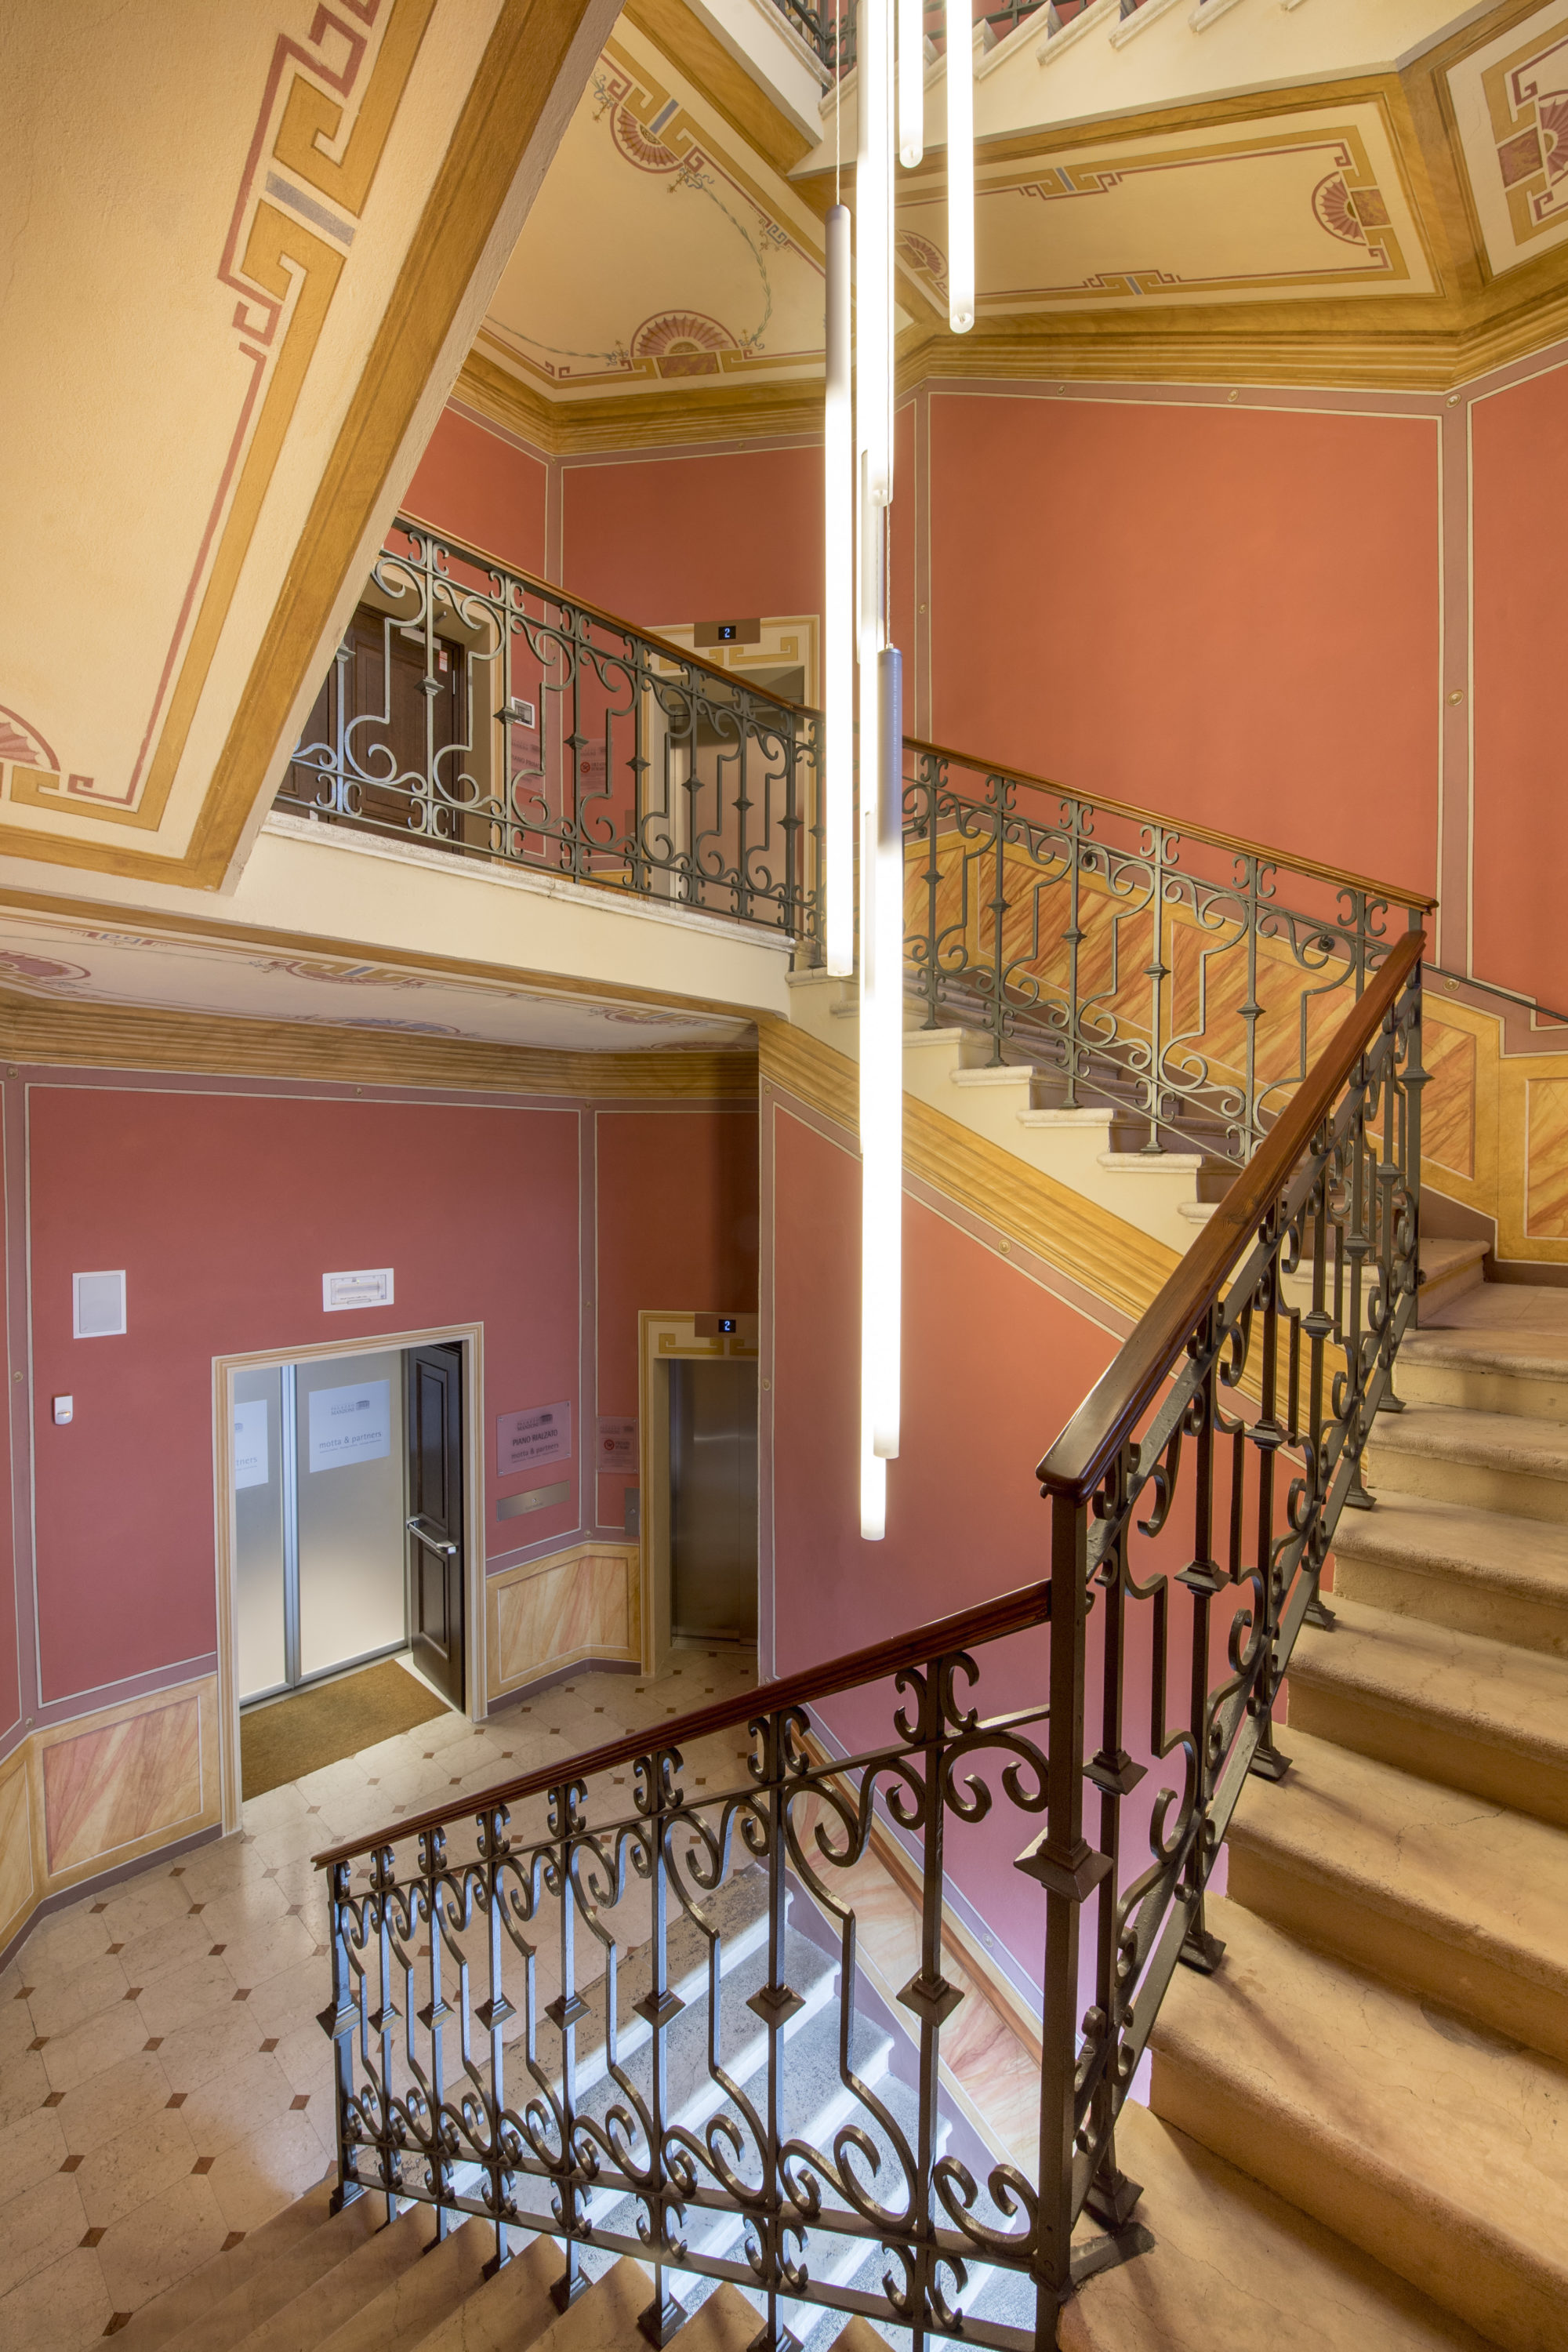 Foto di Palazzo Manzoni: scale interne del palazzo